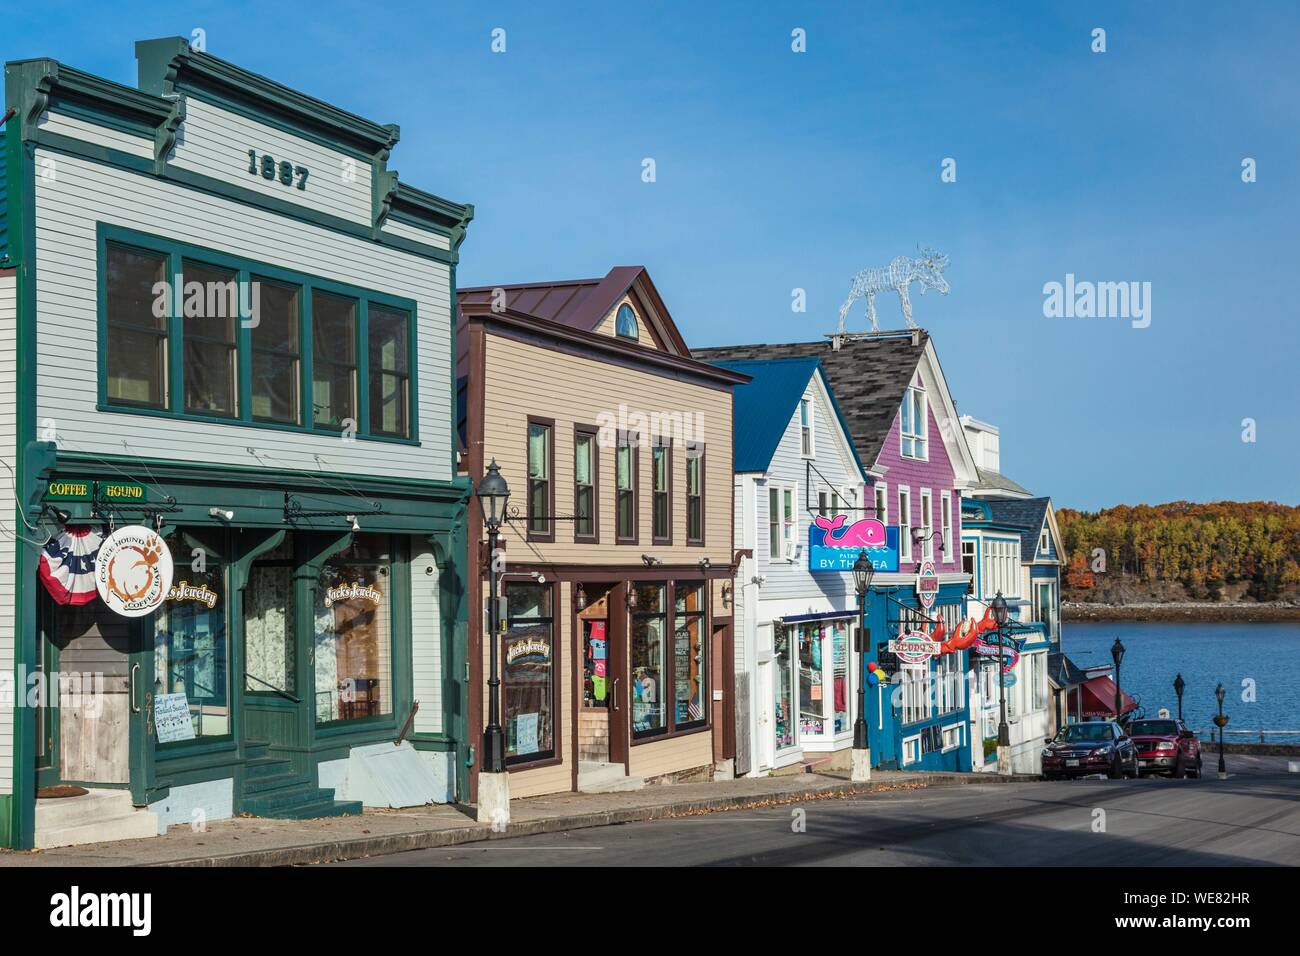 Etats-unis (Maine), Mt. Île déserte, Bar Harbour, les restaurants le long de la rue Main, automne, matin Banque D'Images